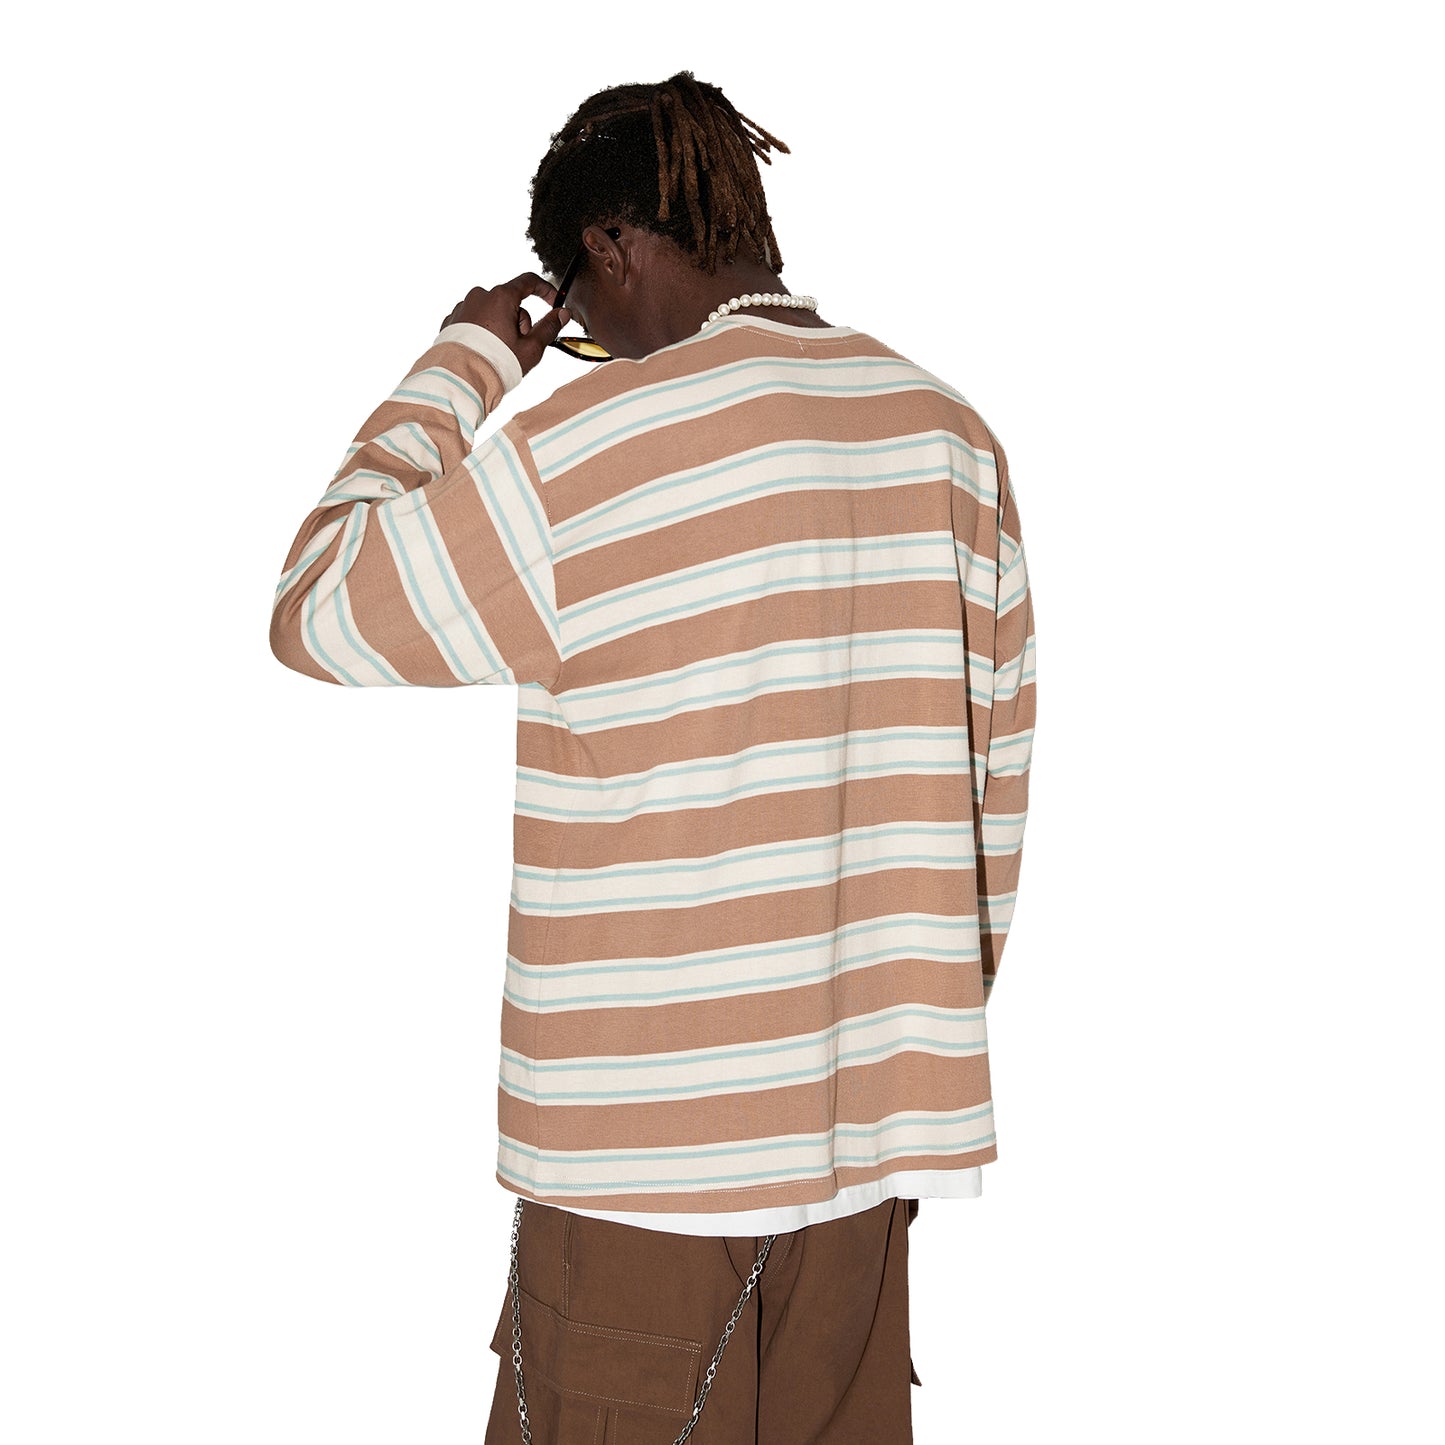 Oversized Striped Long Sleeve Shirts Streetwear for Men Women